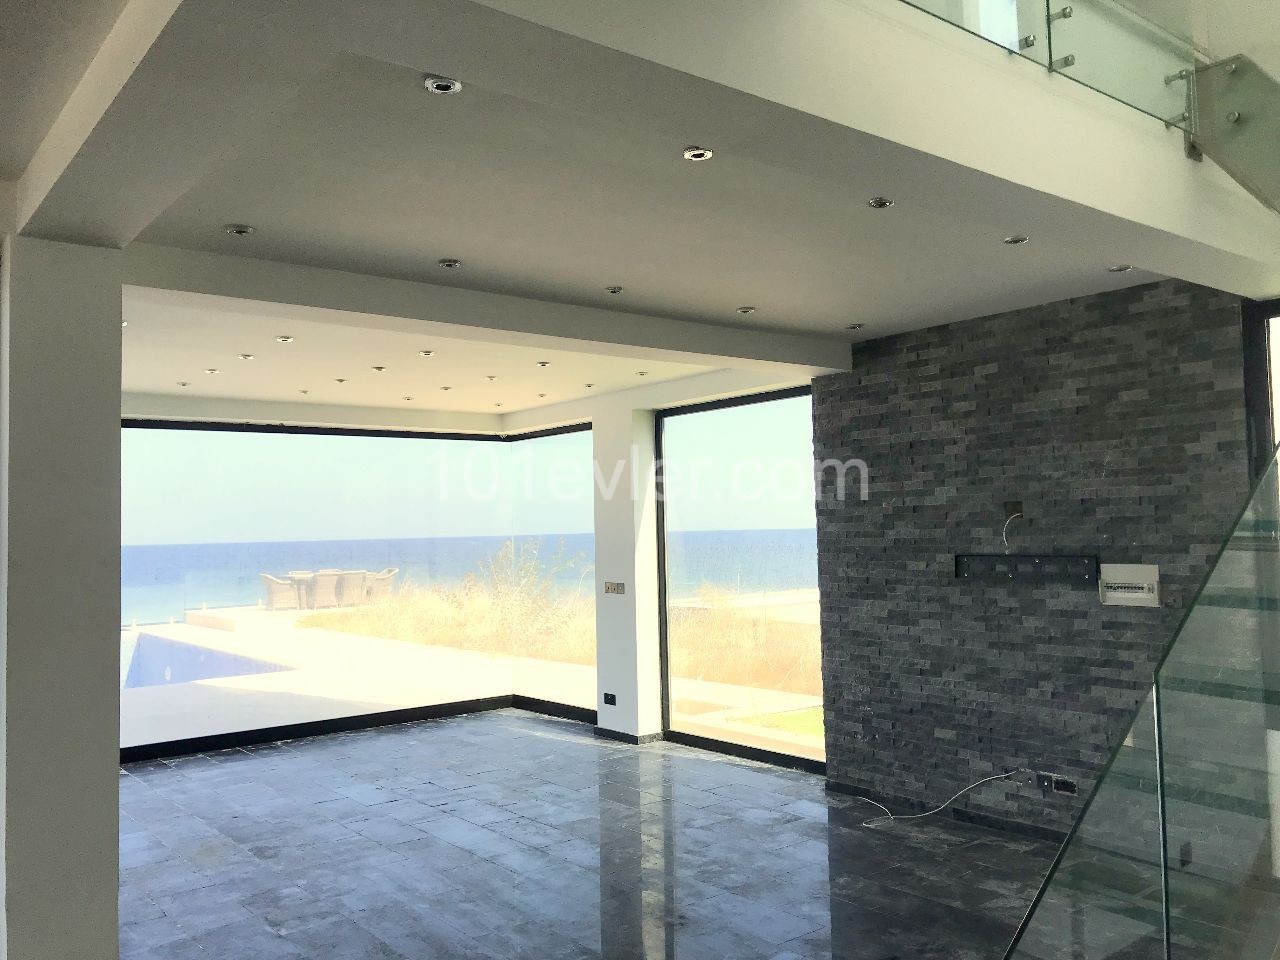 Girne Karşıyaka'da denize sıfır lüks villa. Modern dizaynı ve göz kamaştırıcı manzarası, denize sıfır yaşam arayanlara özel. 05338403555